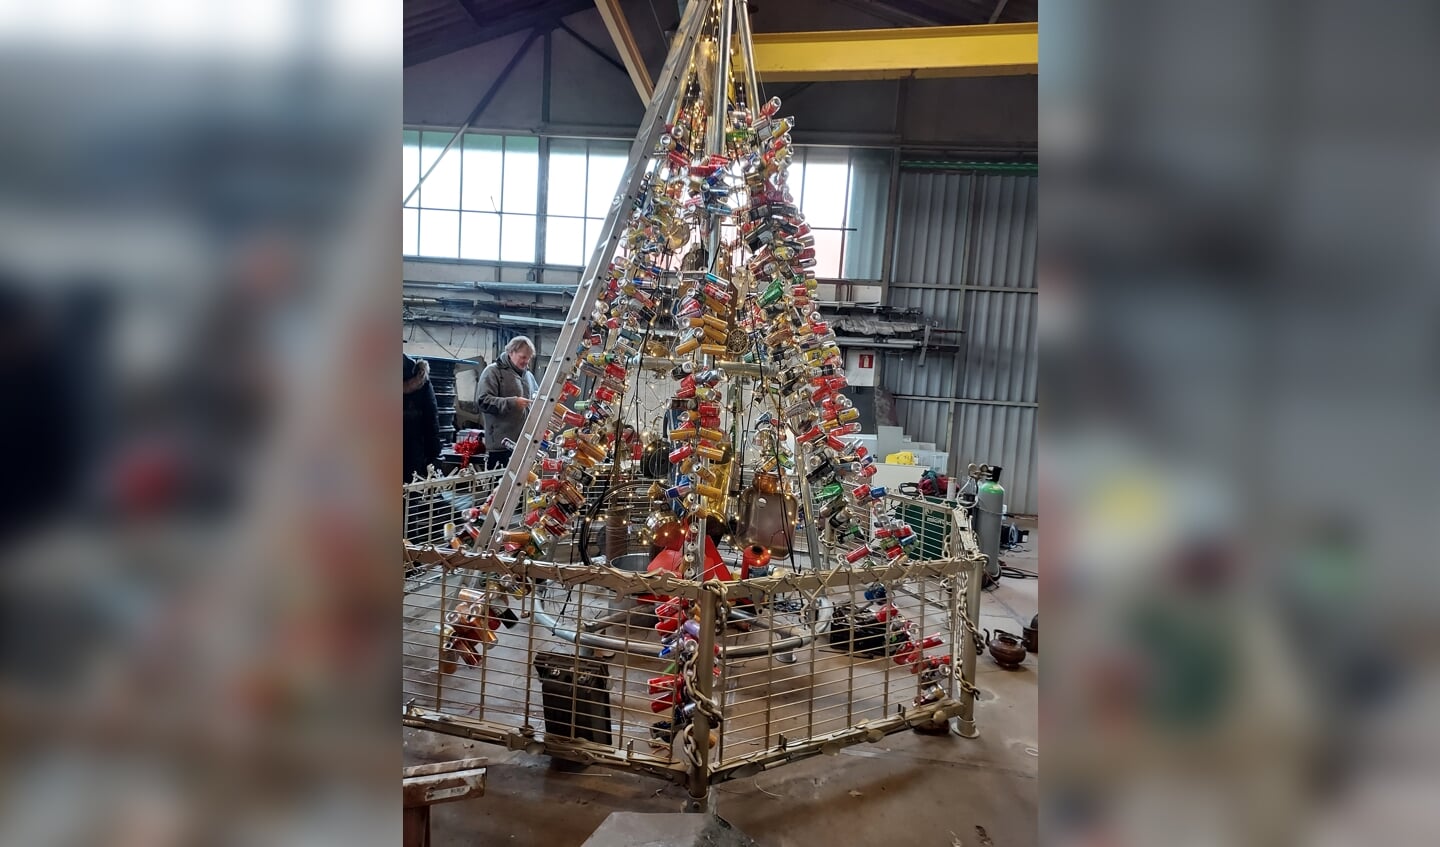 De kerstboom in aanbouw, bij firma De Rooij